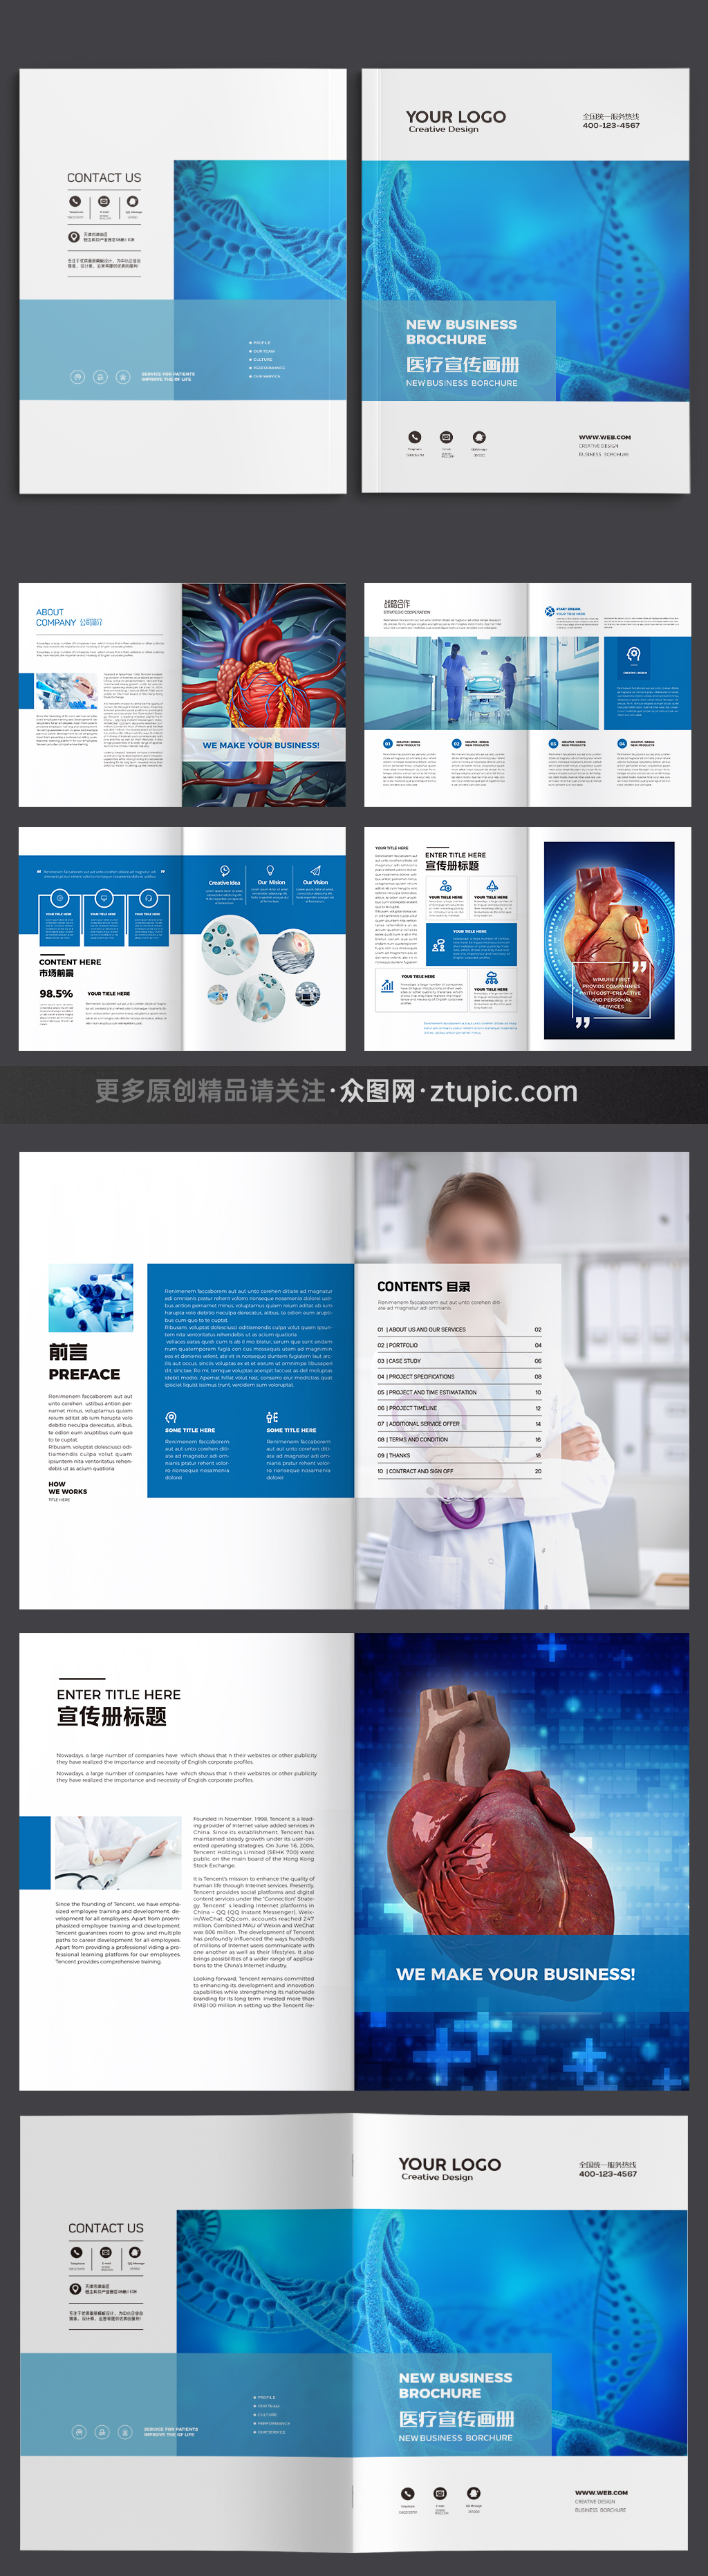 生物制药画册模板立即下载立即下载蓝色医疗宣传册设计模板立即下载